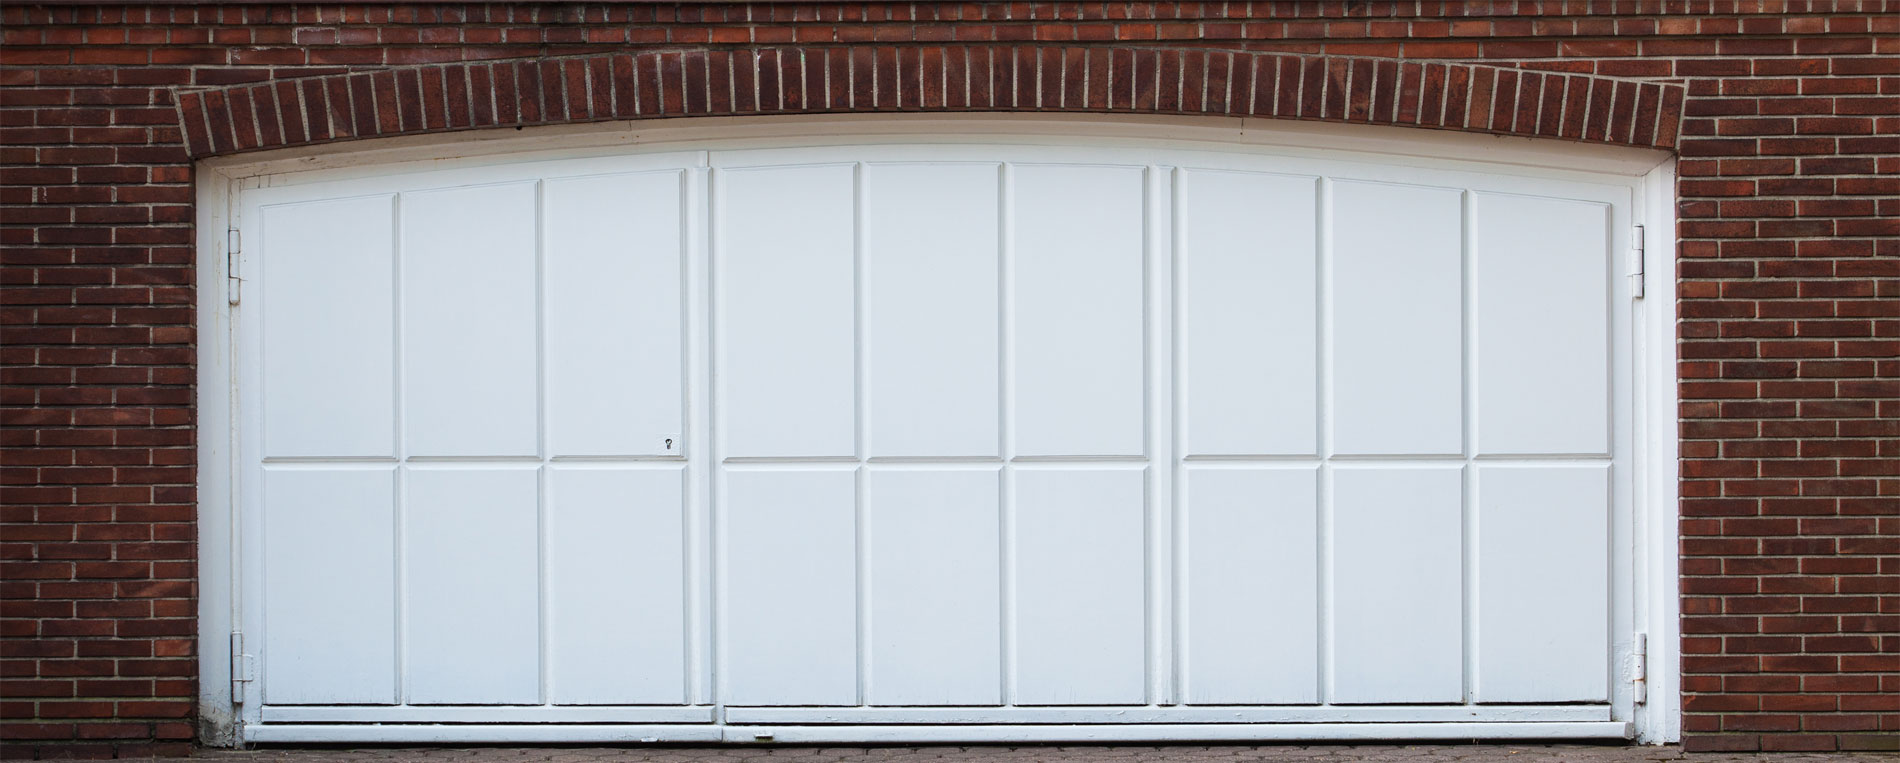 The Benefits Of Garage Door Insulation